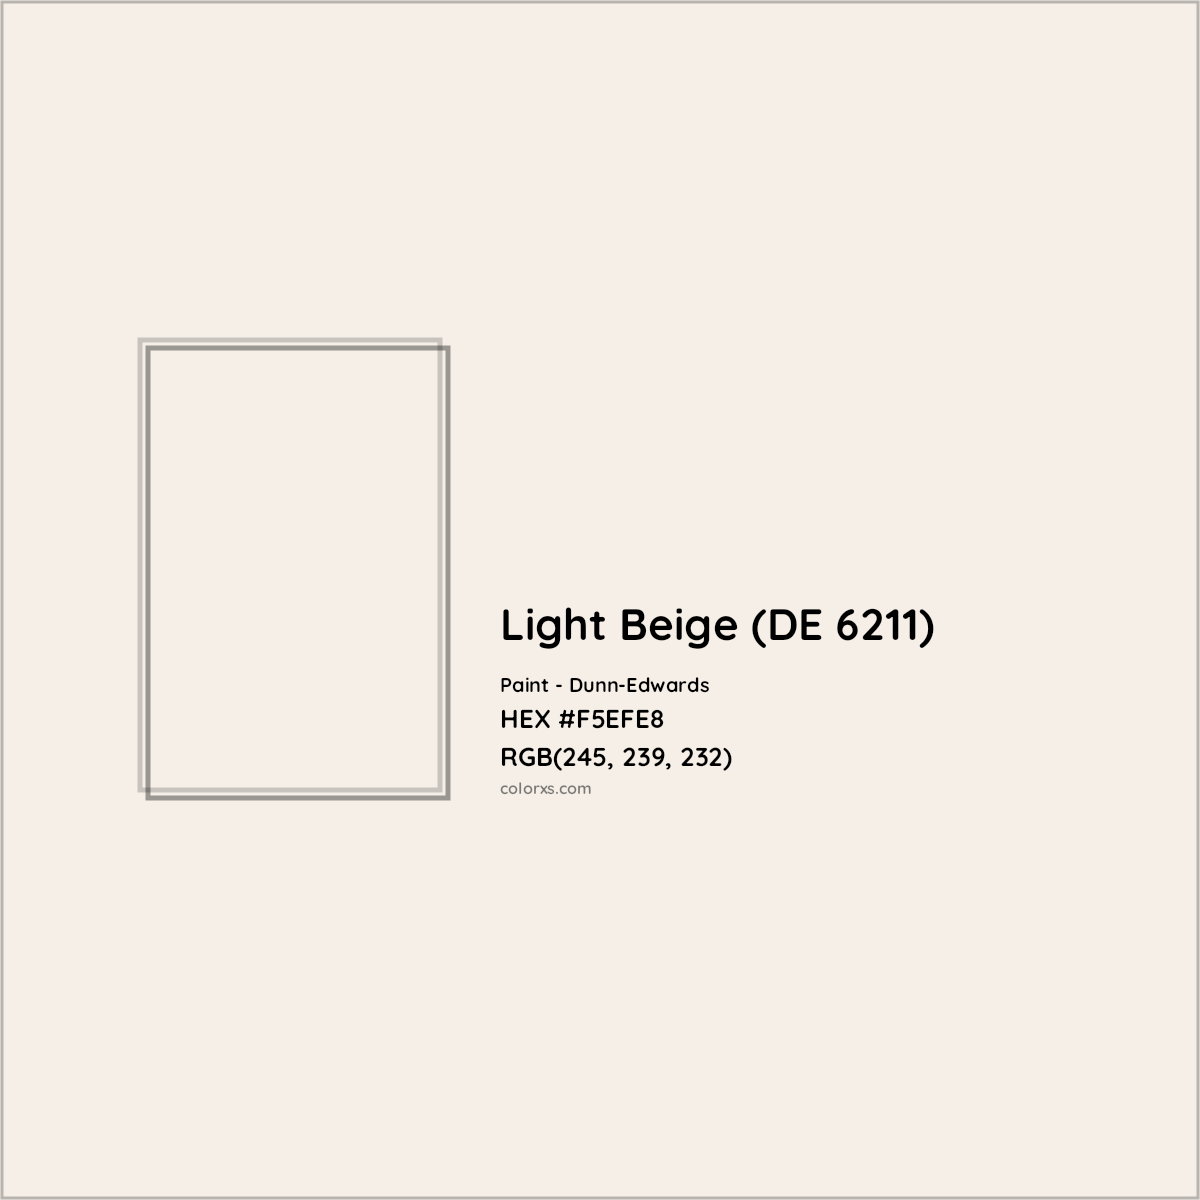 HEX #F5EFE8 Light Beige (DE 6211) Paint Dunn-Edwards - Color Code